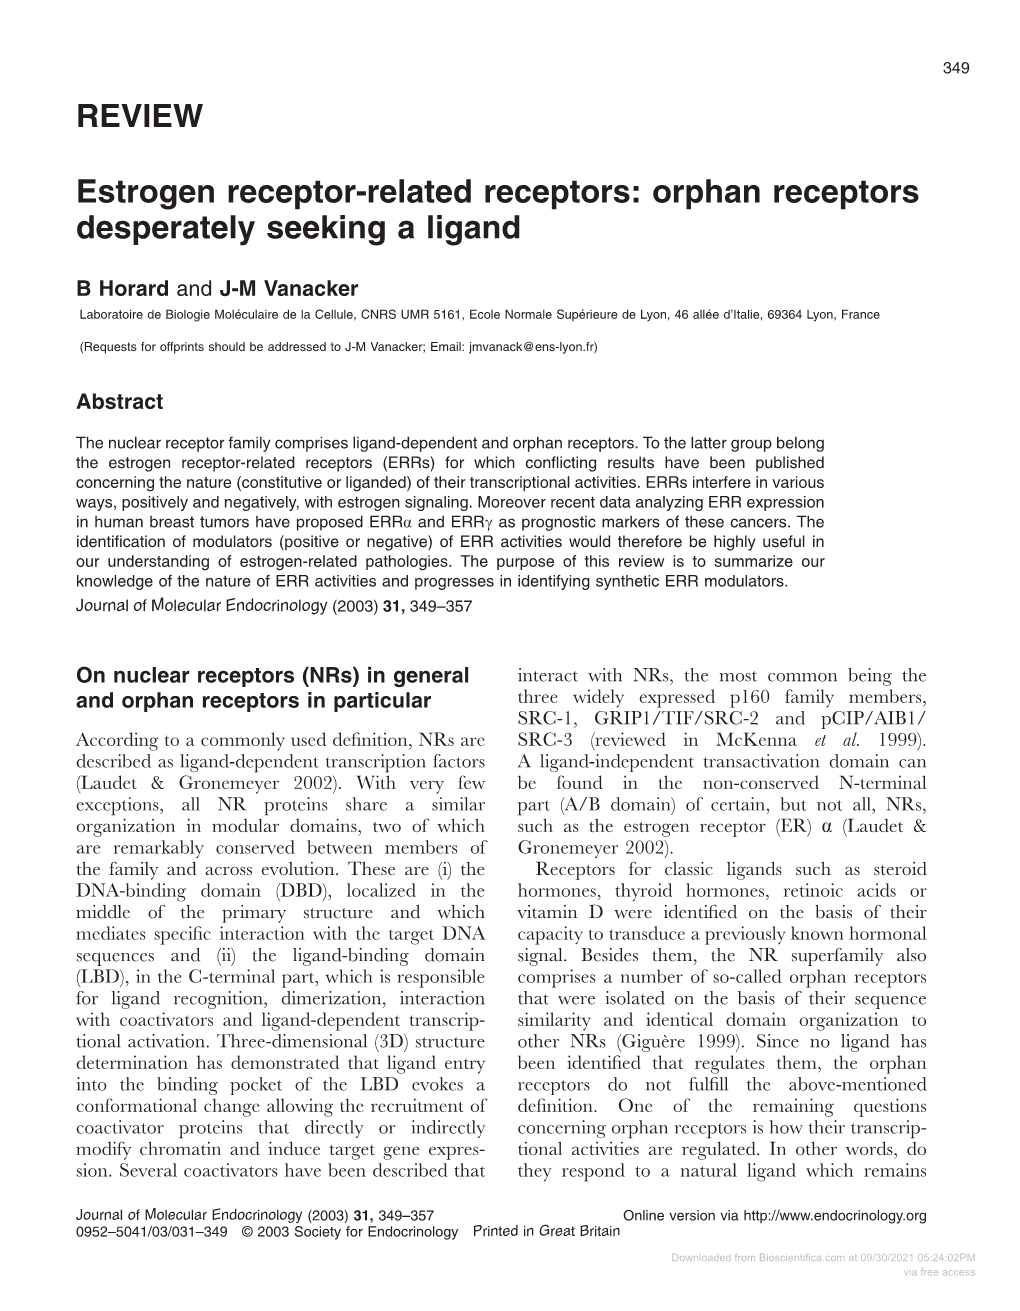 REVIEW Estrogen Receptor-Related Receptors